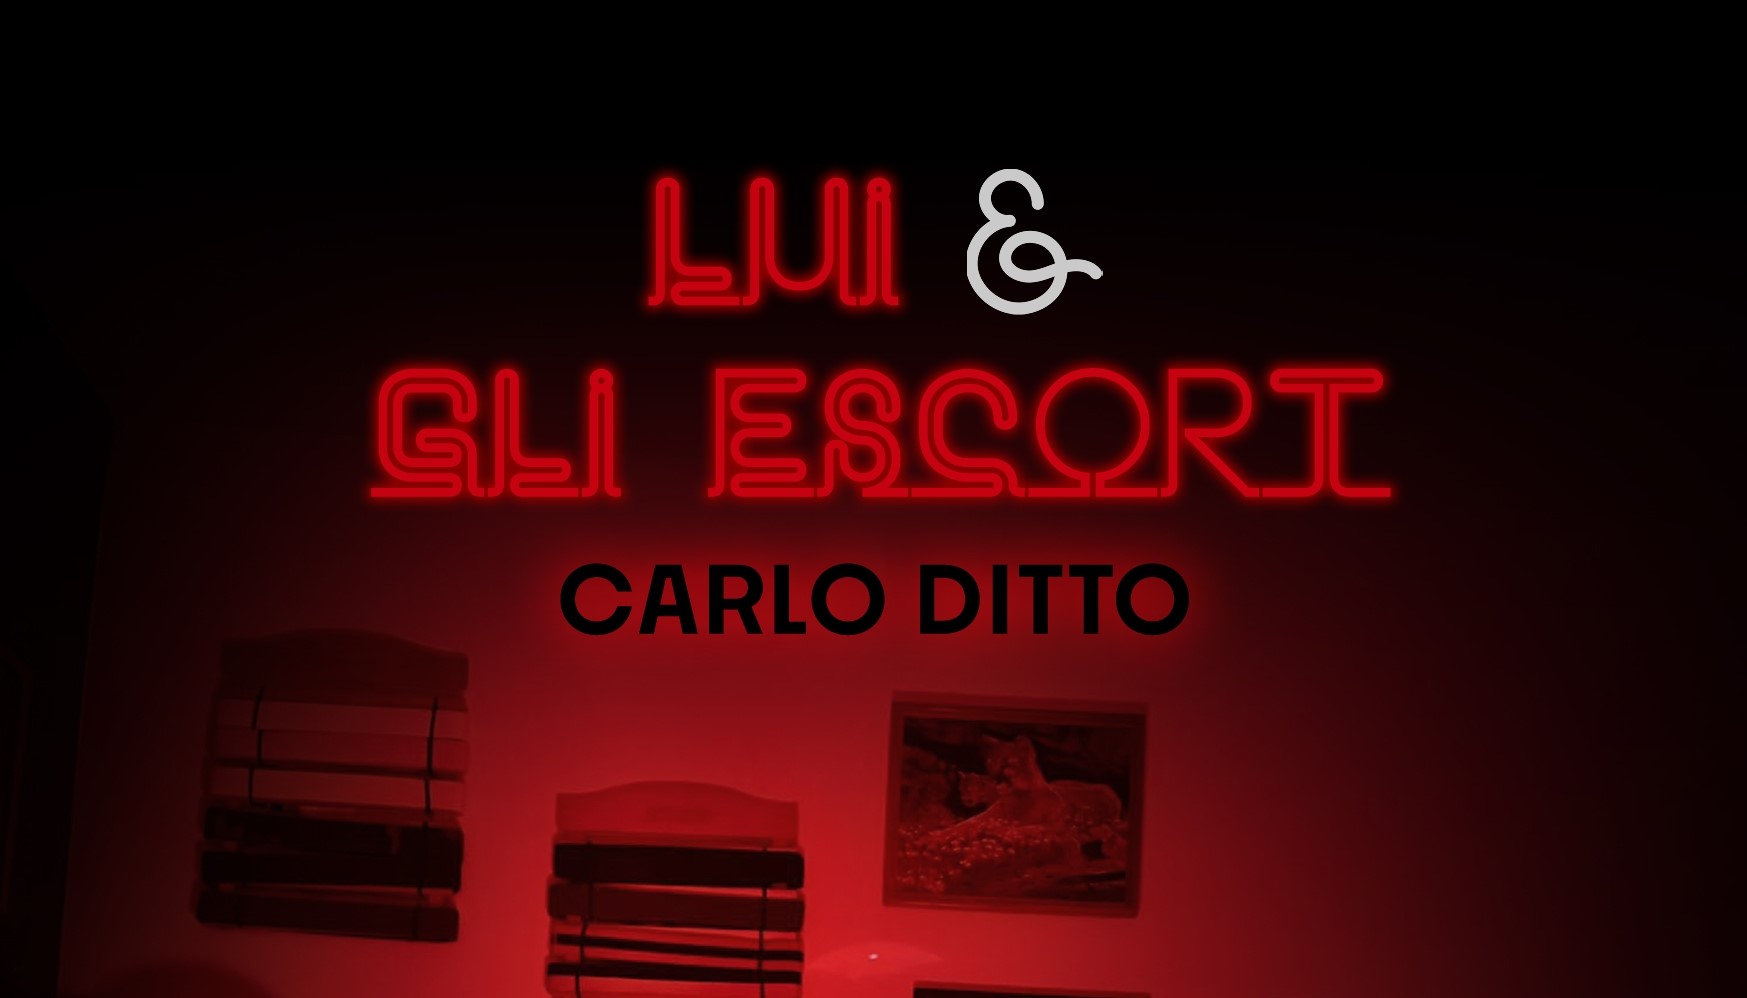 È uscito "Lui & gli escort" di Carlo Ditto, primo libro della neonata Edizioni Senza Linea